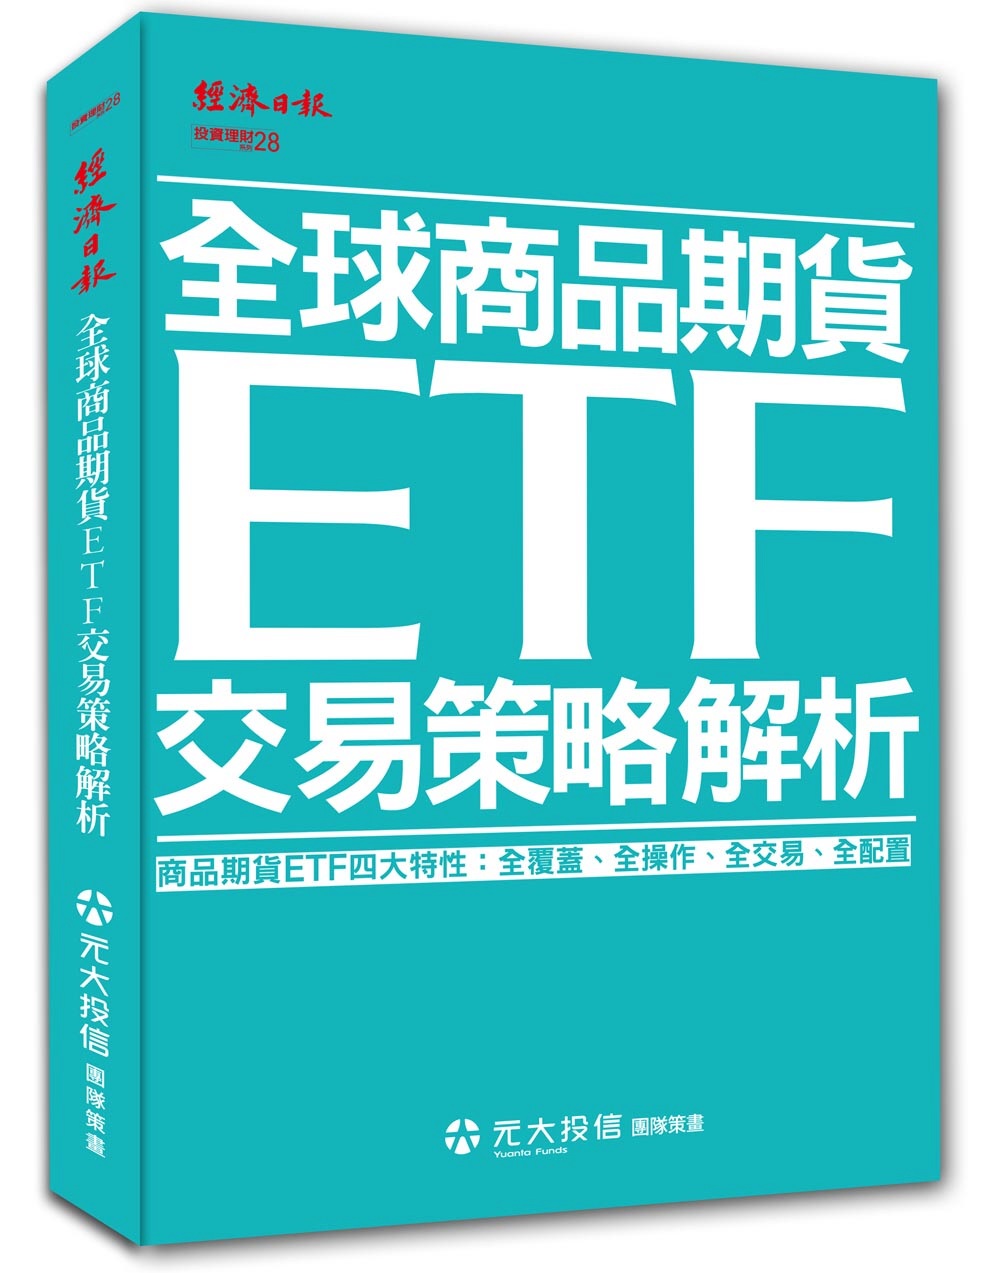 全球商品期貨ETF交易策略解析